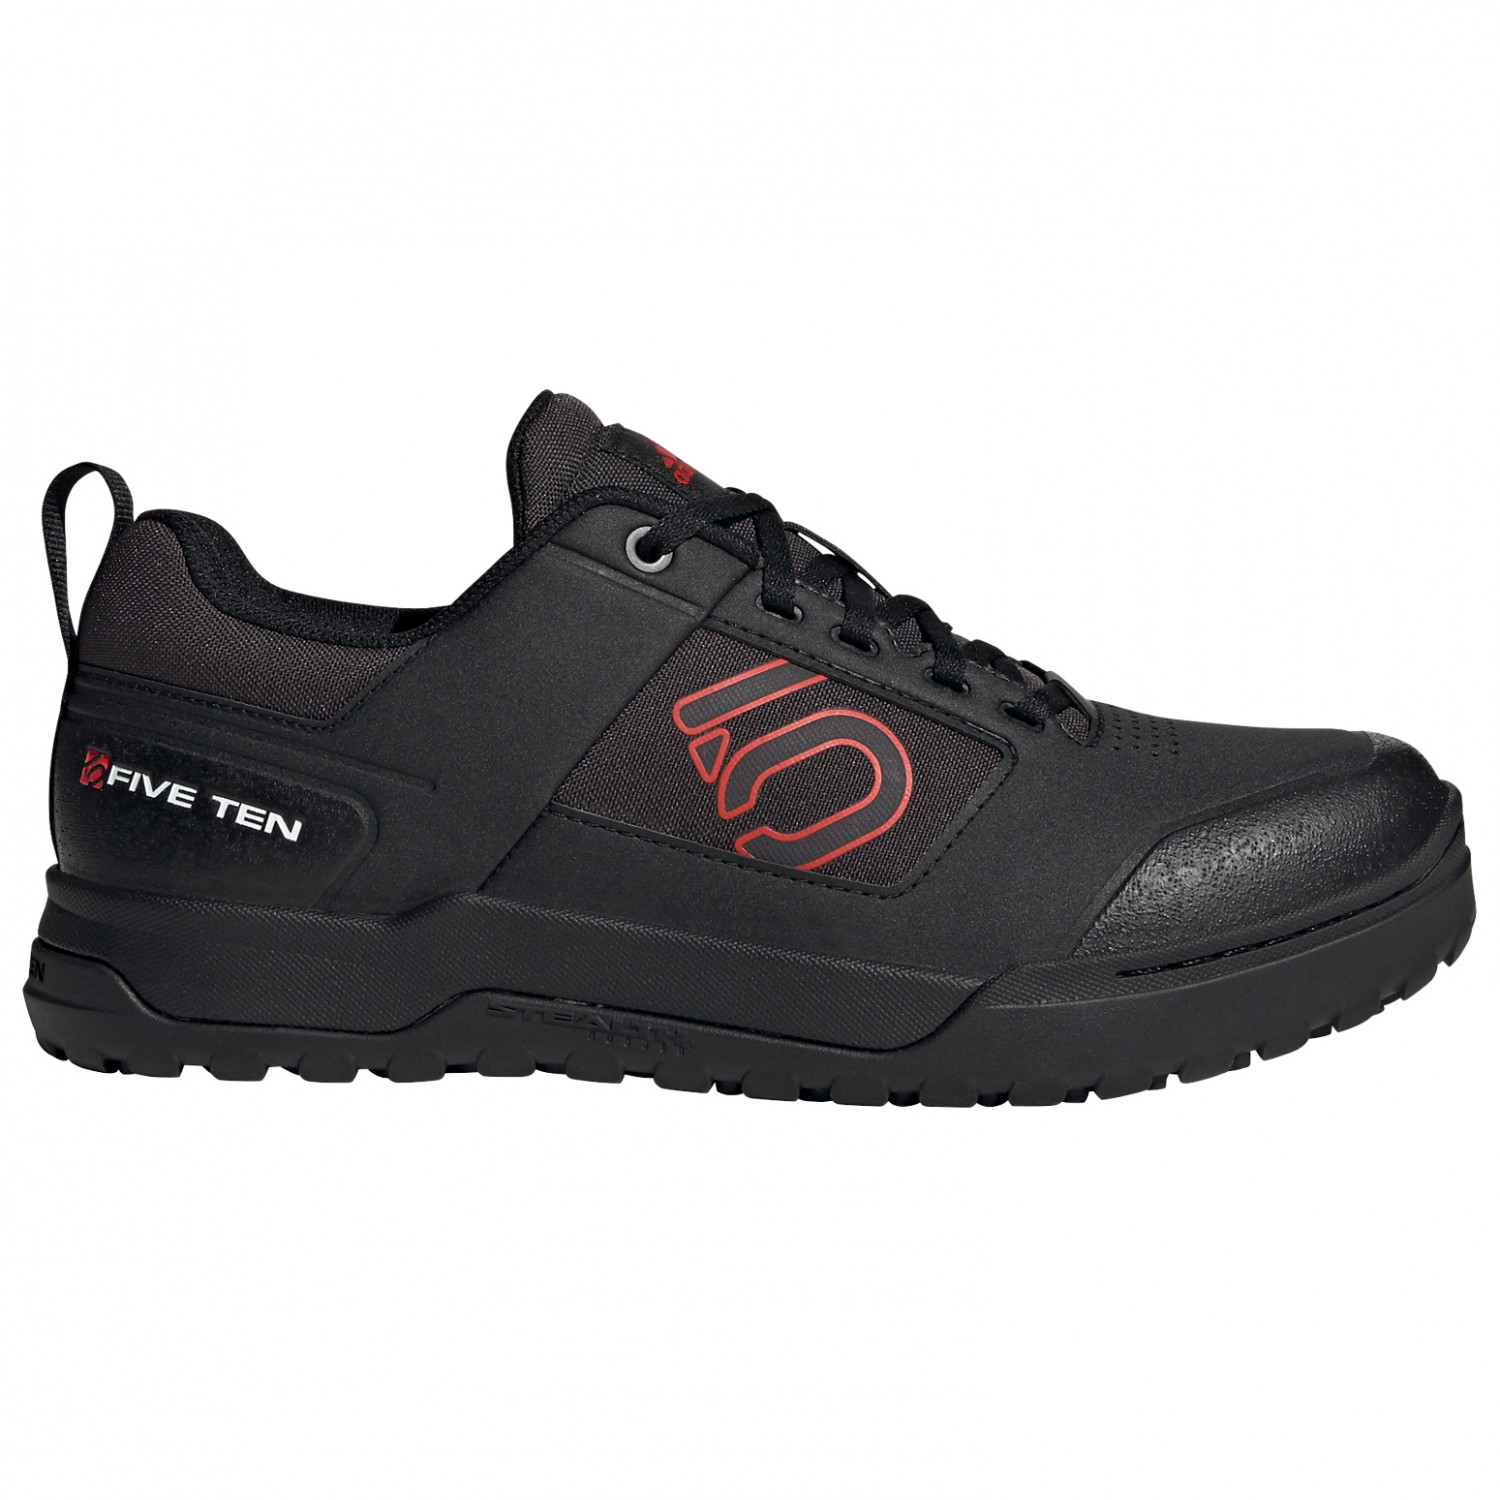 Велосипедная обувь Five Ten Impact Pro, цвет Core Black/Red/Ftwr White мешок для cменной обуви дорама bad guys city of evil 32533